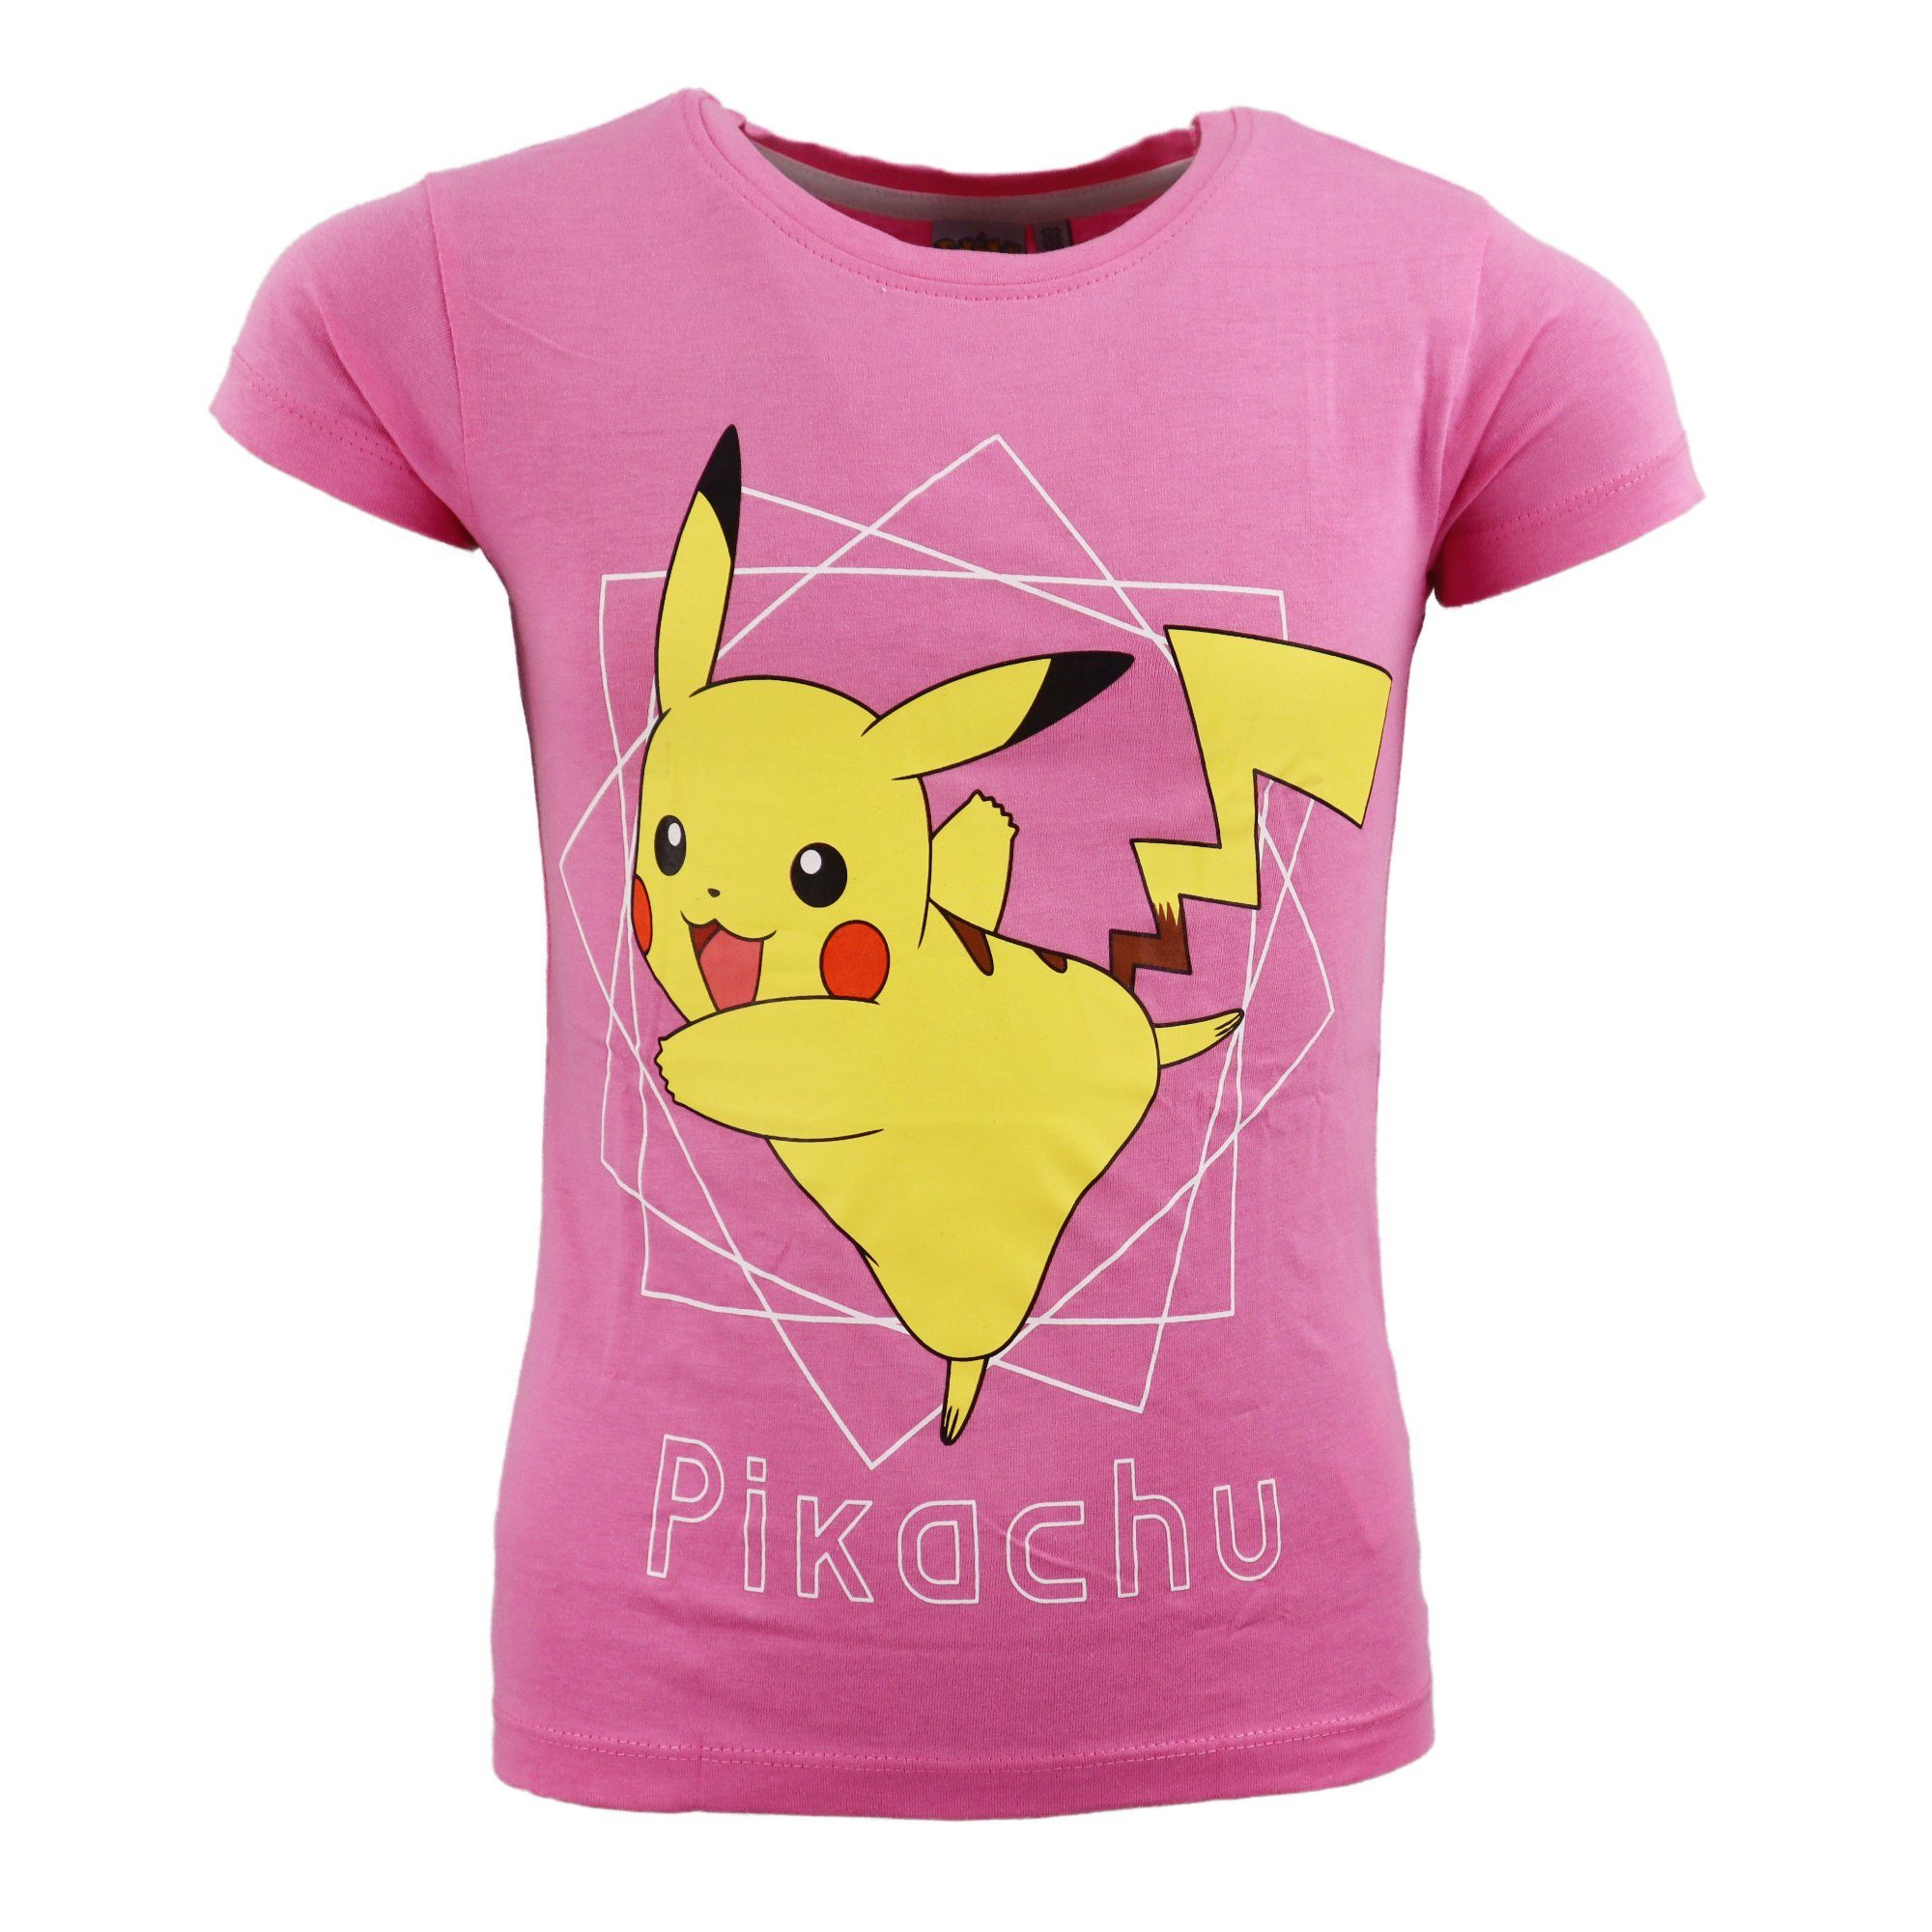 POKÉMON T-Shirt Pokemon Pikachu Mädchen Kinder Shirt Gr. 110 bis 152, 100% Baumwolle, Rosa oder Weiß